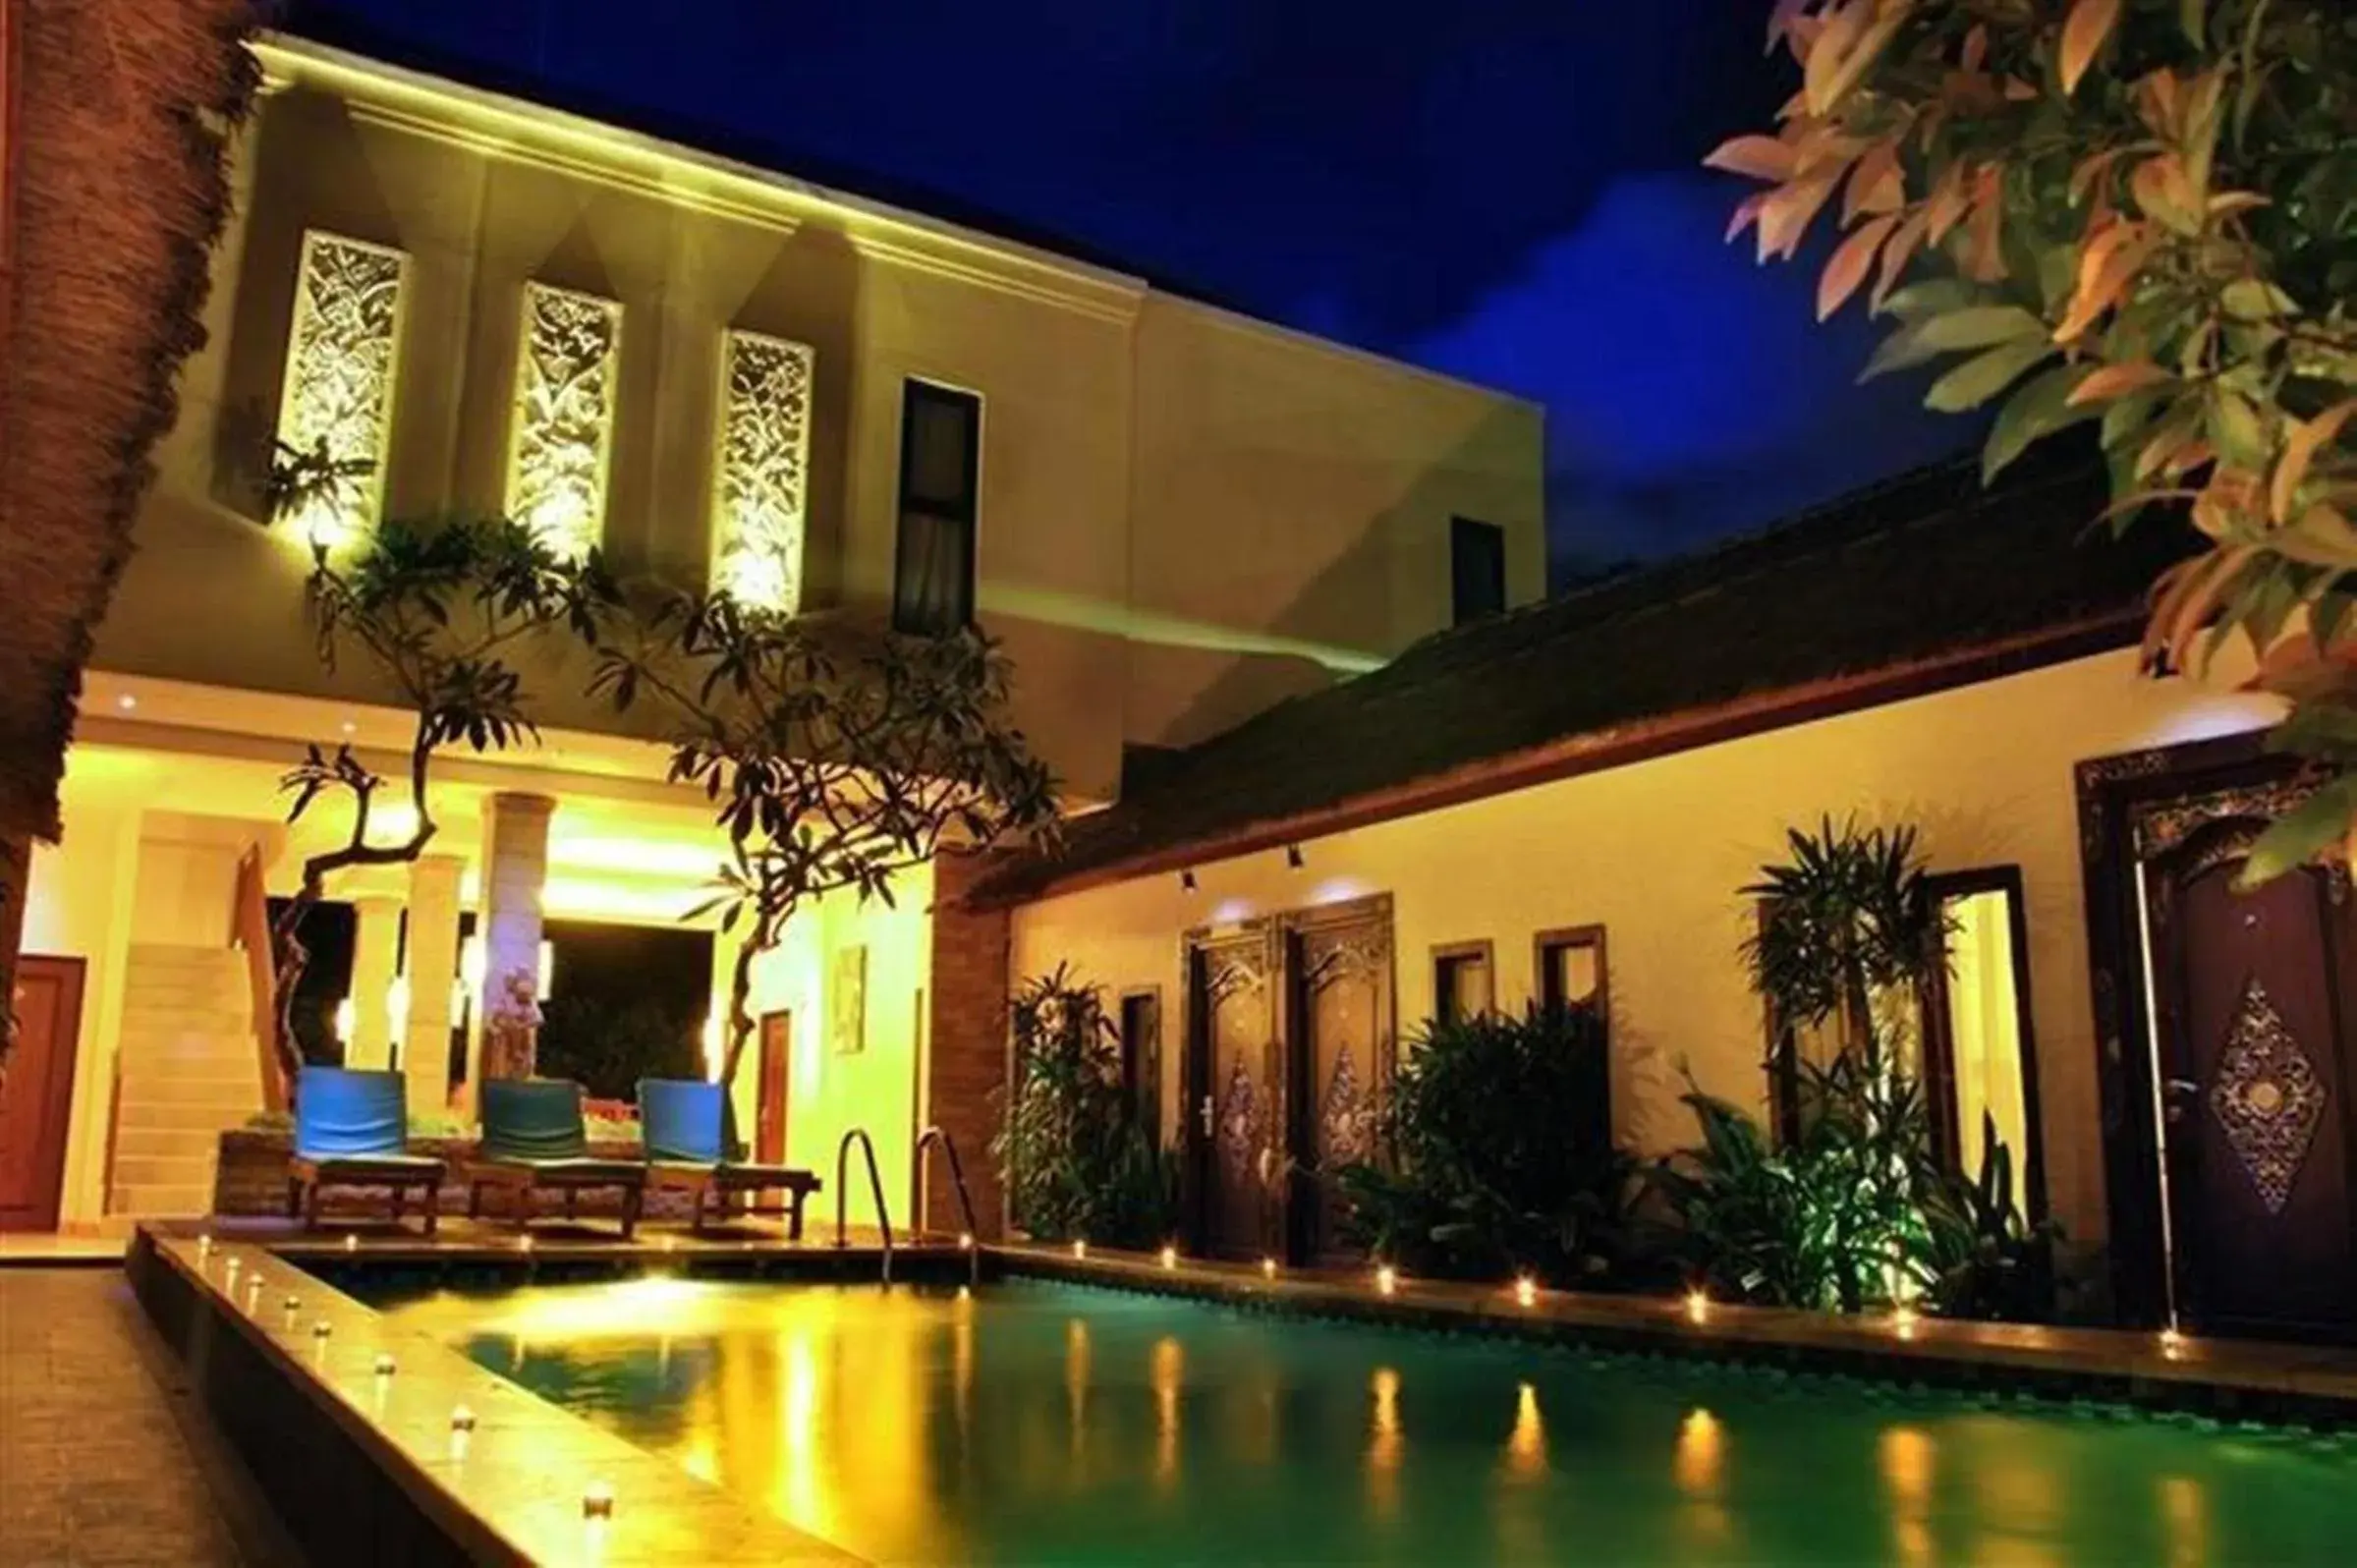 Night, Property Building in Coco de Heaven Hotel